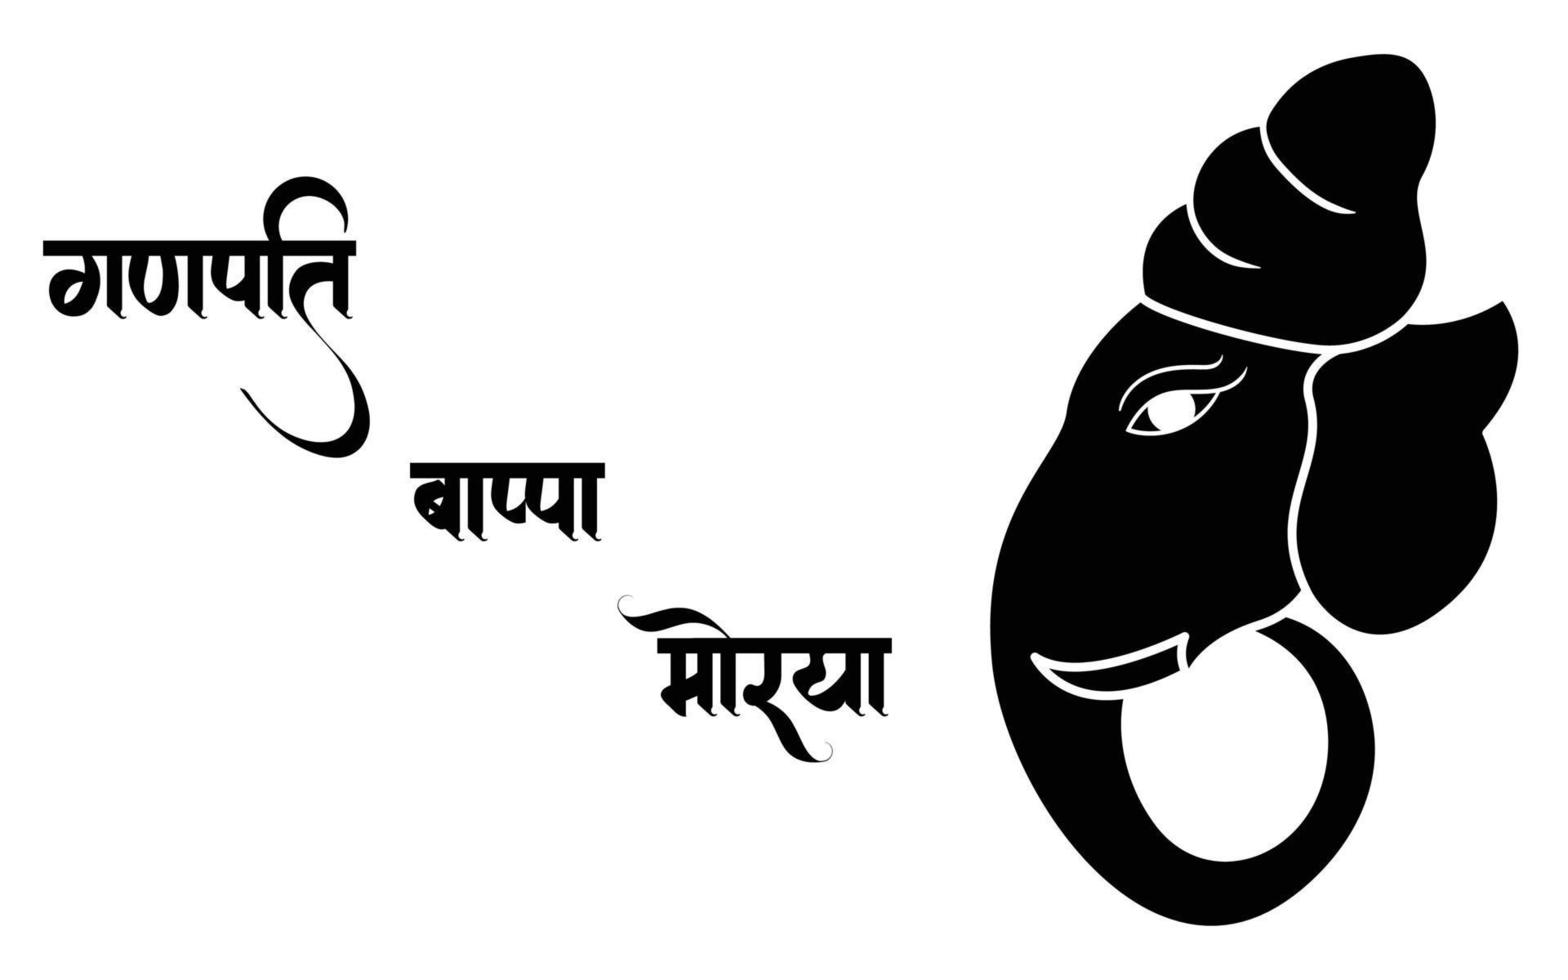 ganpati svartvitt illustration, glad ganesh chaturthi. vektor